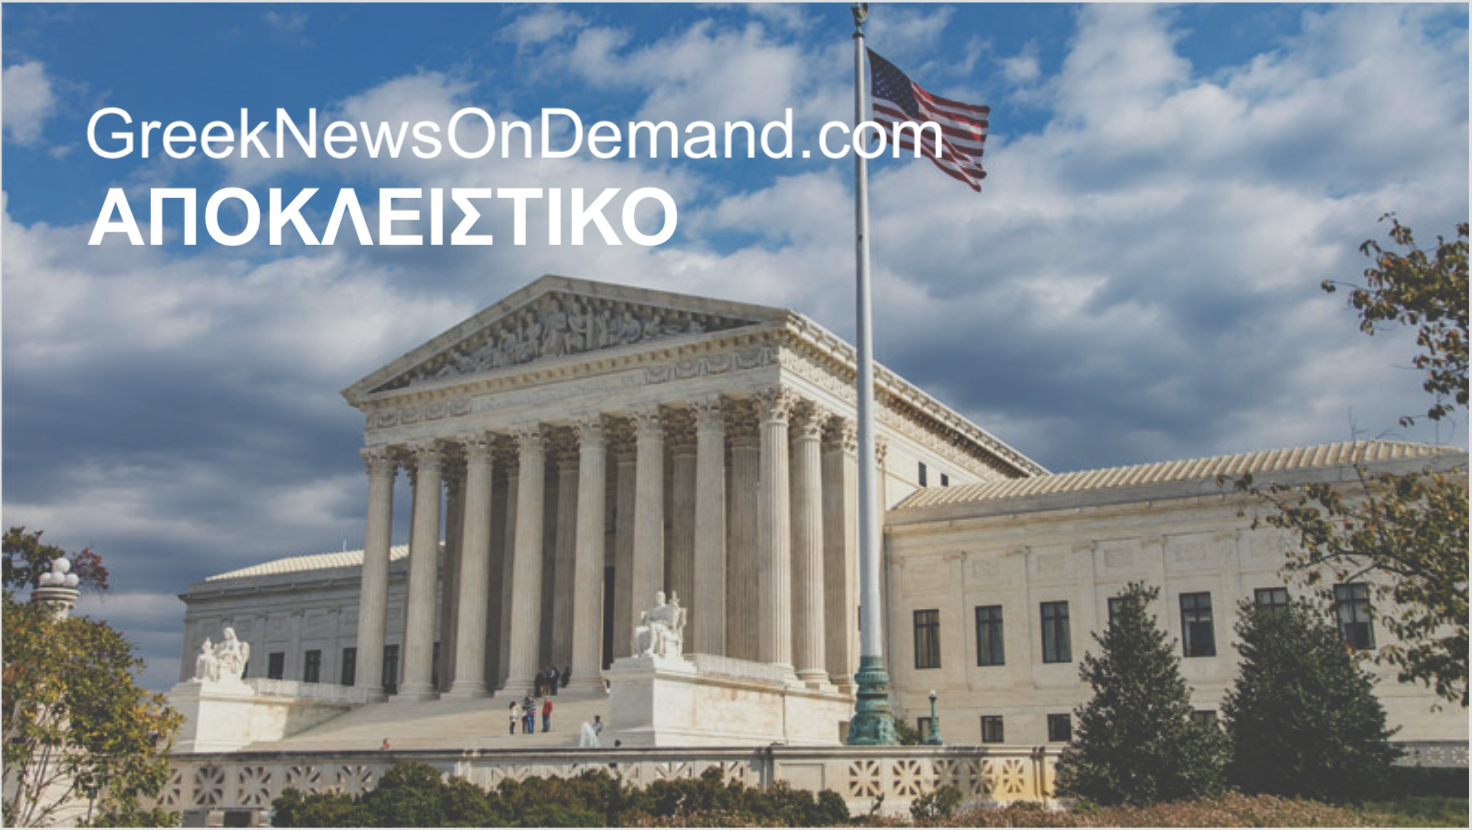 ΕΚΤΑΚΤΟ: Το Ανώτατον Δικαστήριον των ΗΠΑ ετοιμάζεται πλέον να πιστοποιήσει την επανεκλογή του…ΝΤΟΝΑΛΝΤ ΤΡΑΜΠ!!!